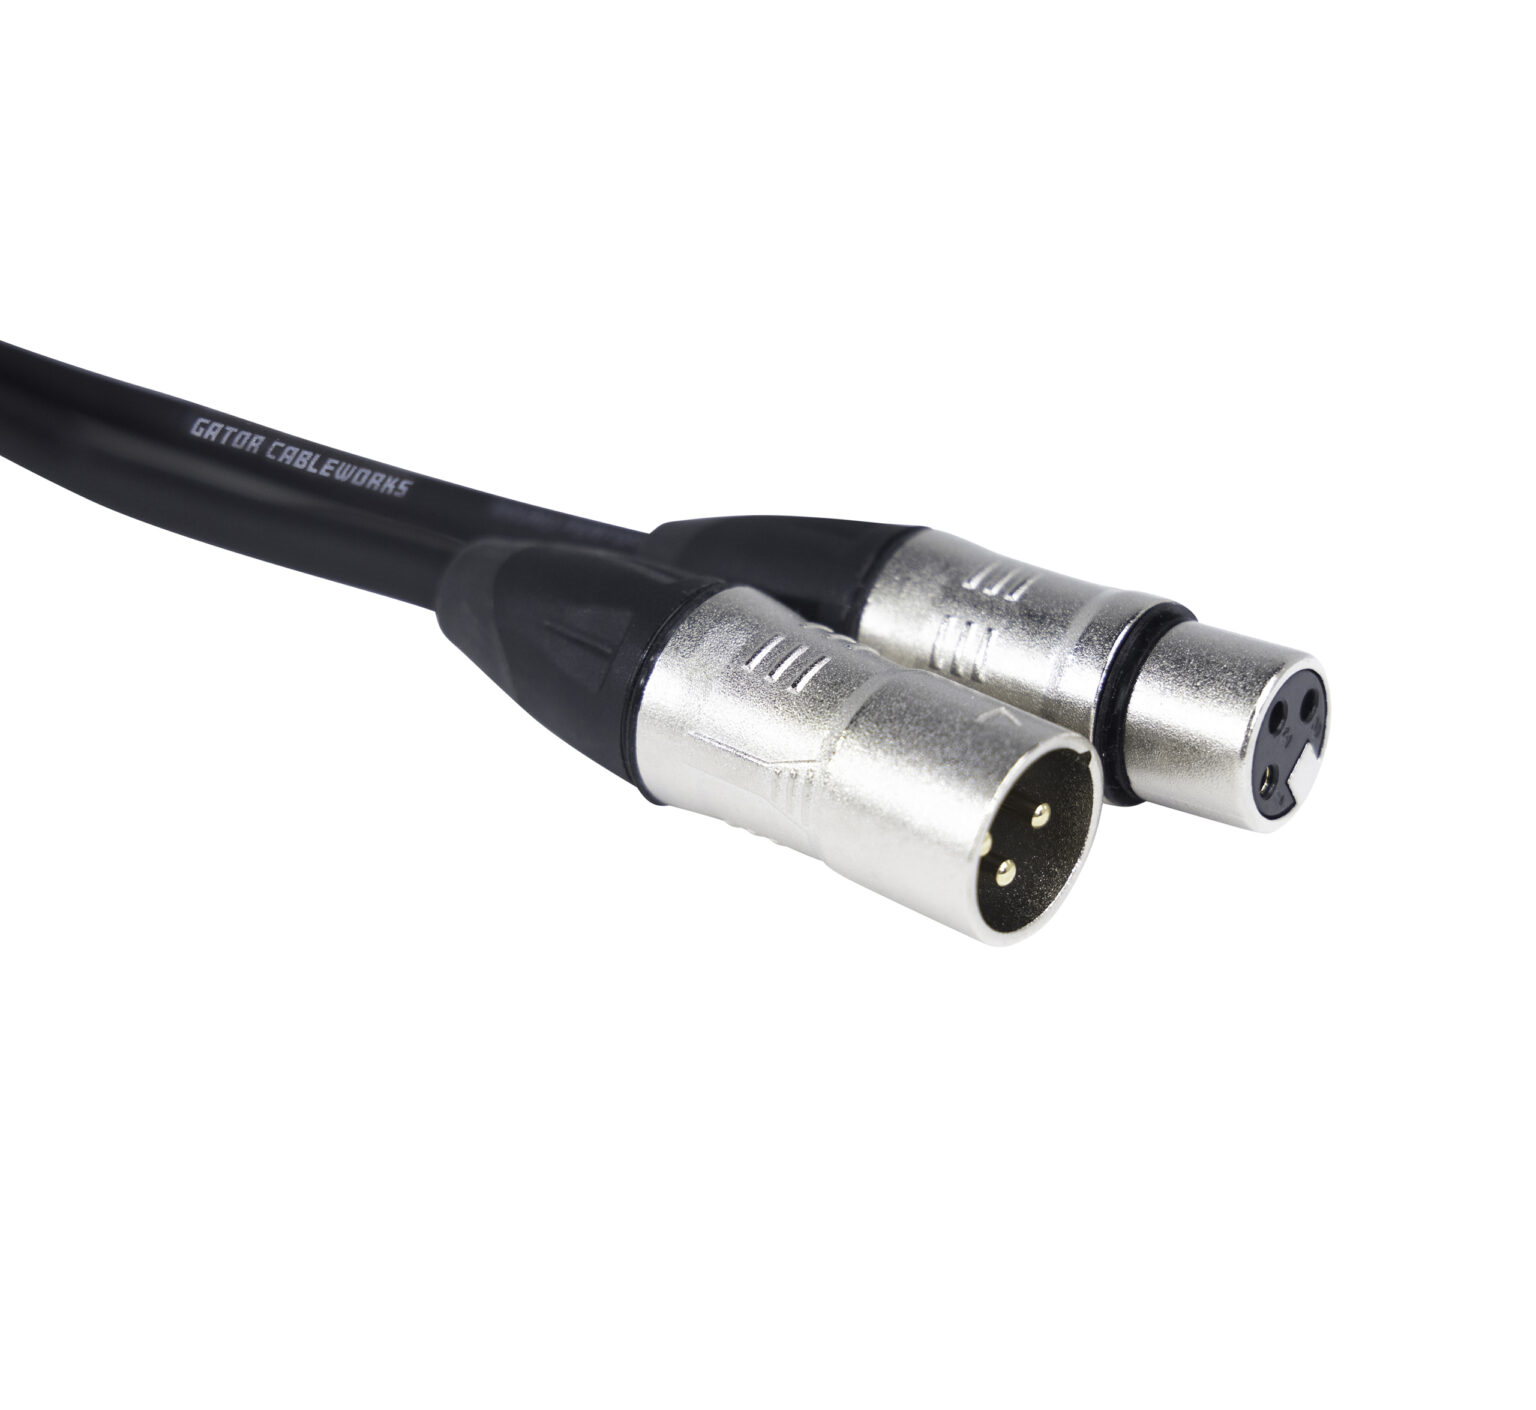 GCWB-XLR-50 50 Foot XLR Microphone Cable